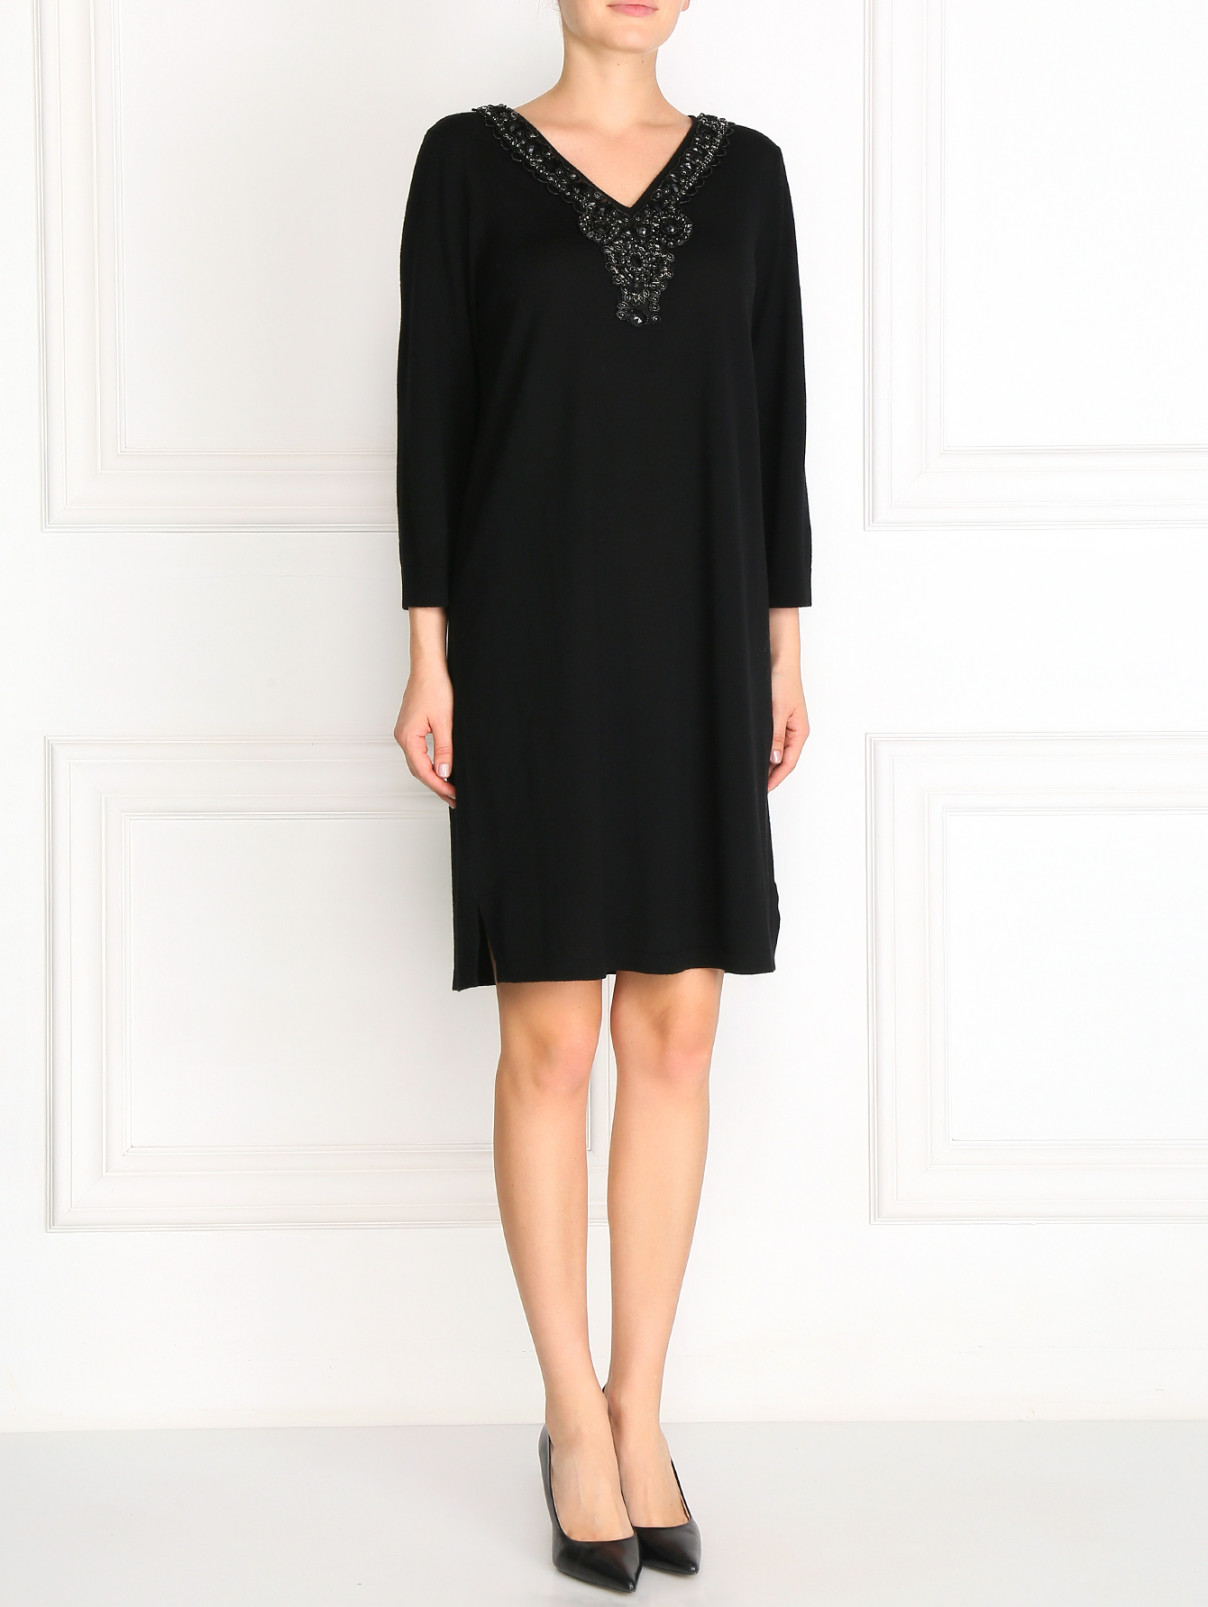 Платье из шерсти декорированное камнями Marina Rinaldi  –  Модель Общий вид  – Цвет:  Черный